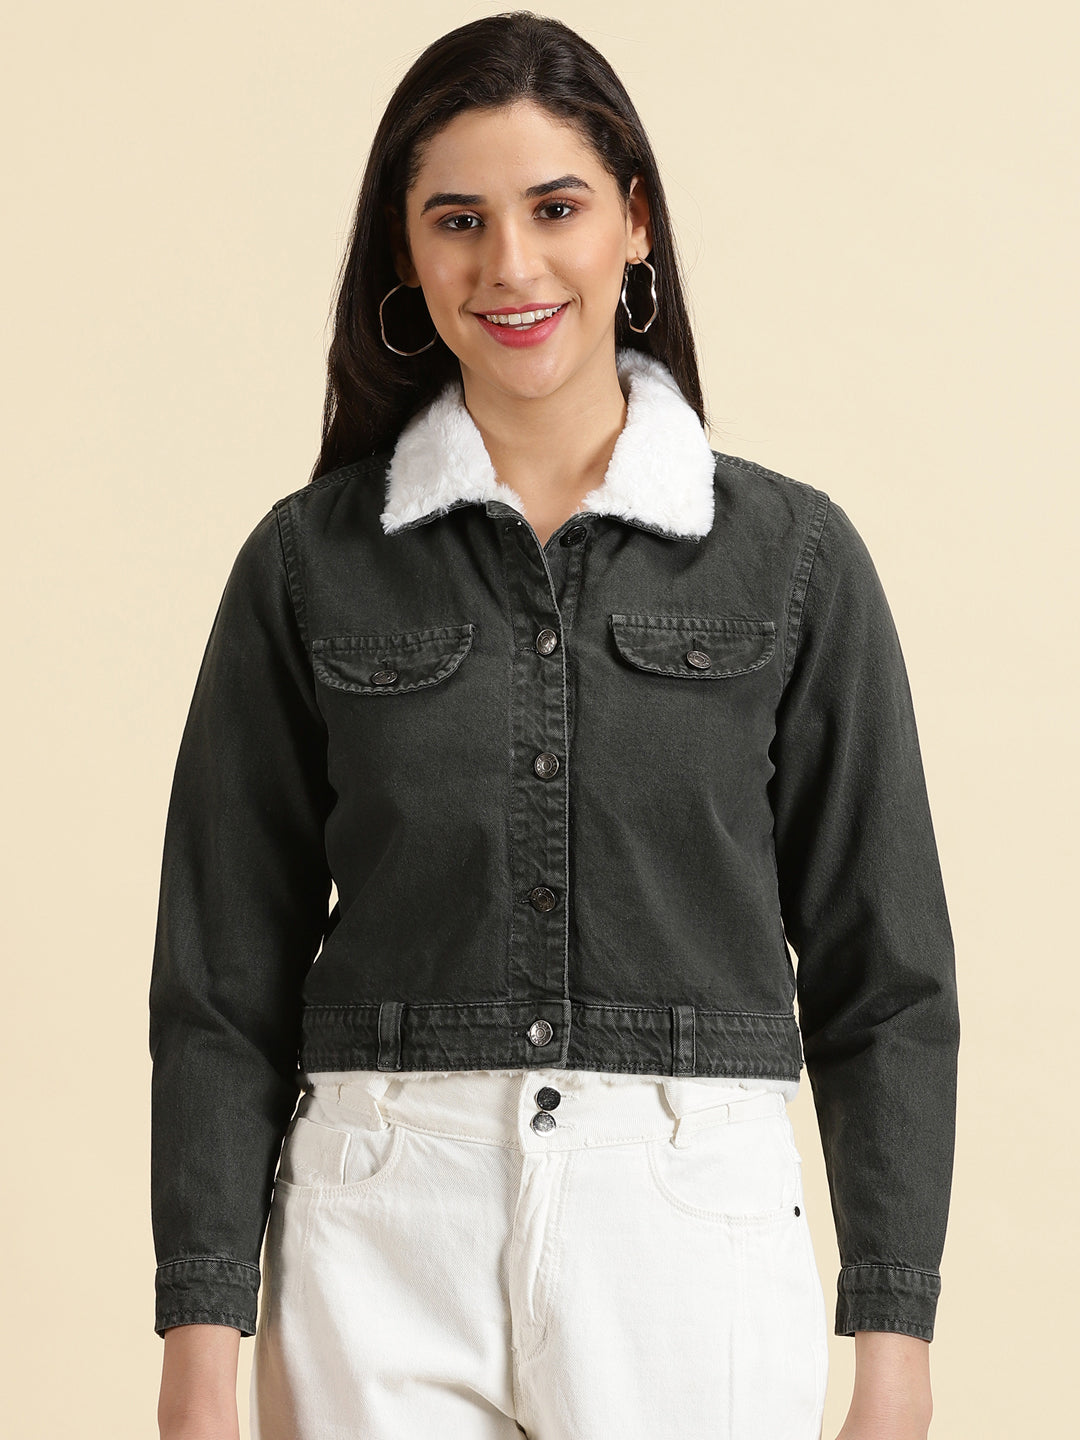 Women's Grey Solid Denim Jacket